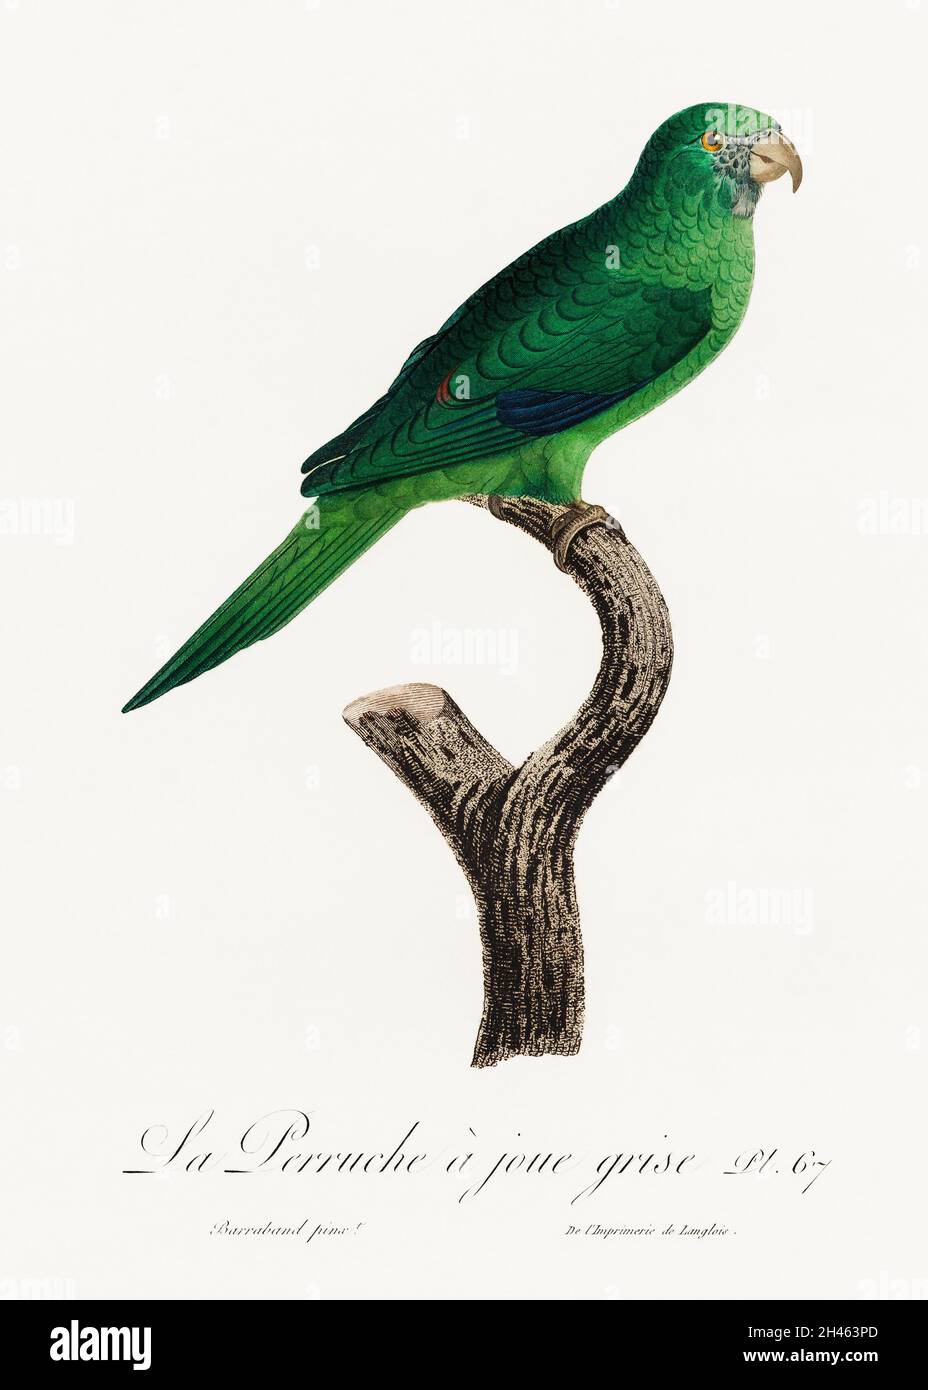 Le Parakeet à joues grises (Brotogeris pyrrhoptera) de l'Histoire naturelle des perroquets (1801—1805) par François Levaillant.Original de la biodiversité Banque D'Images